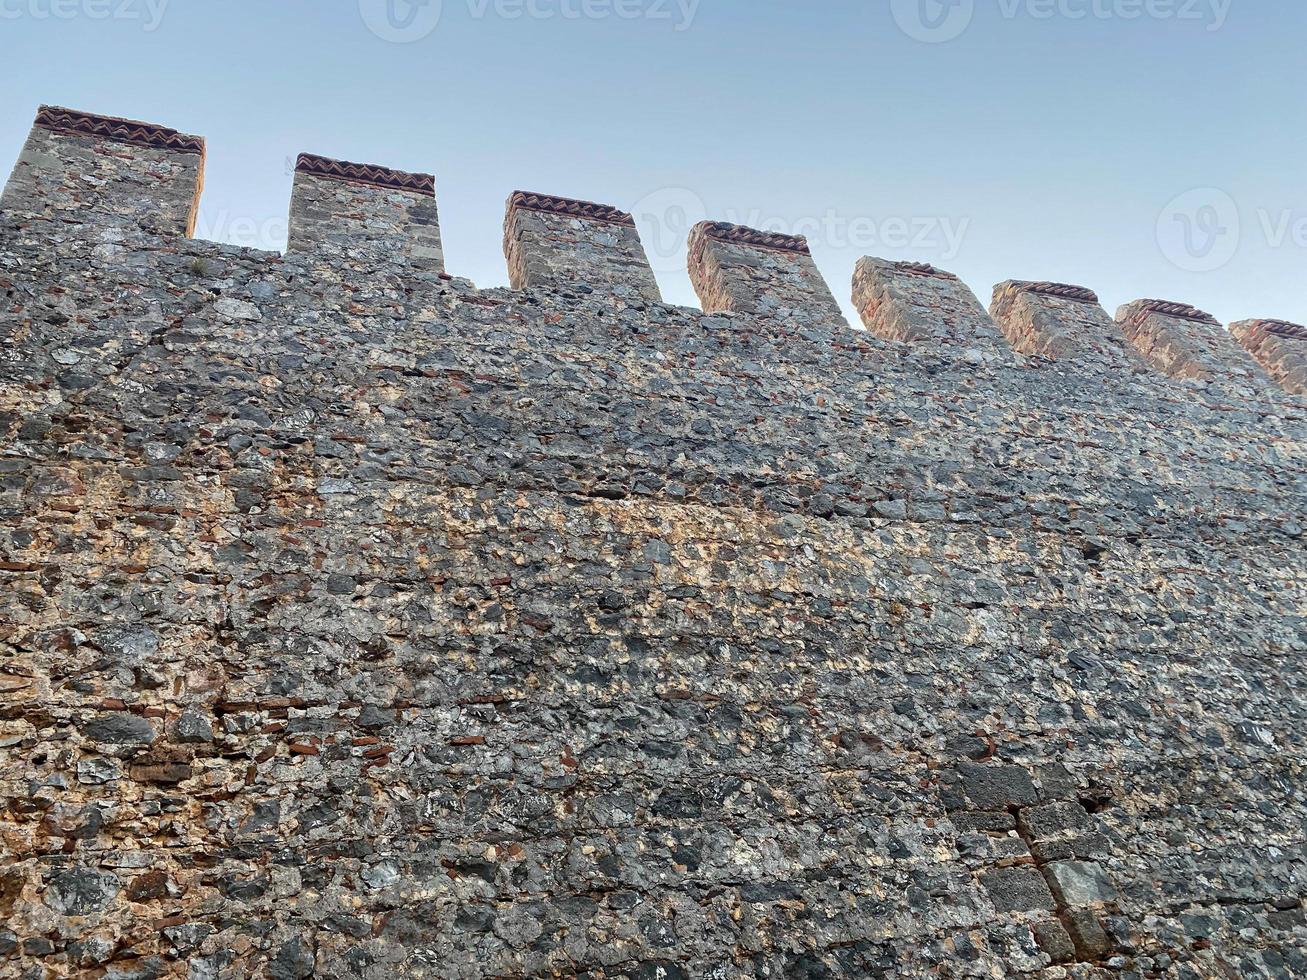 gran muro de piedra de una antigua fortaleza medieval hecha de adoquines contra un cielo azul foto